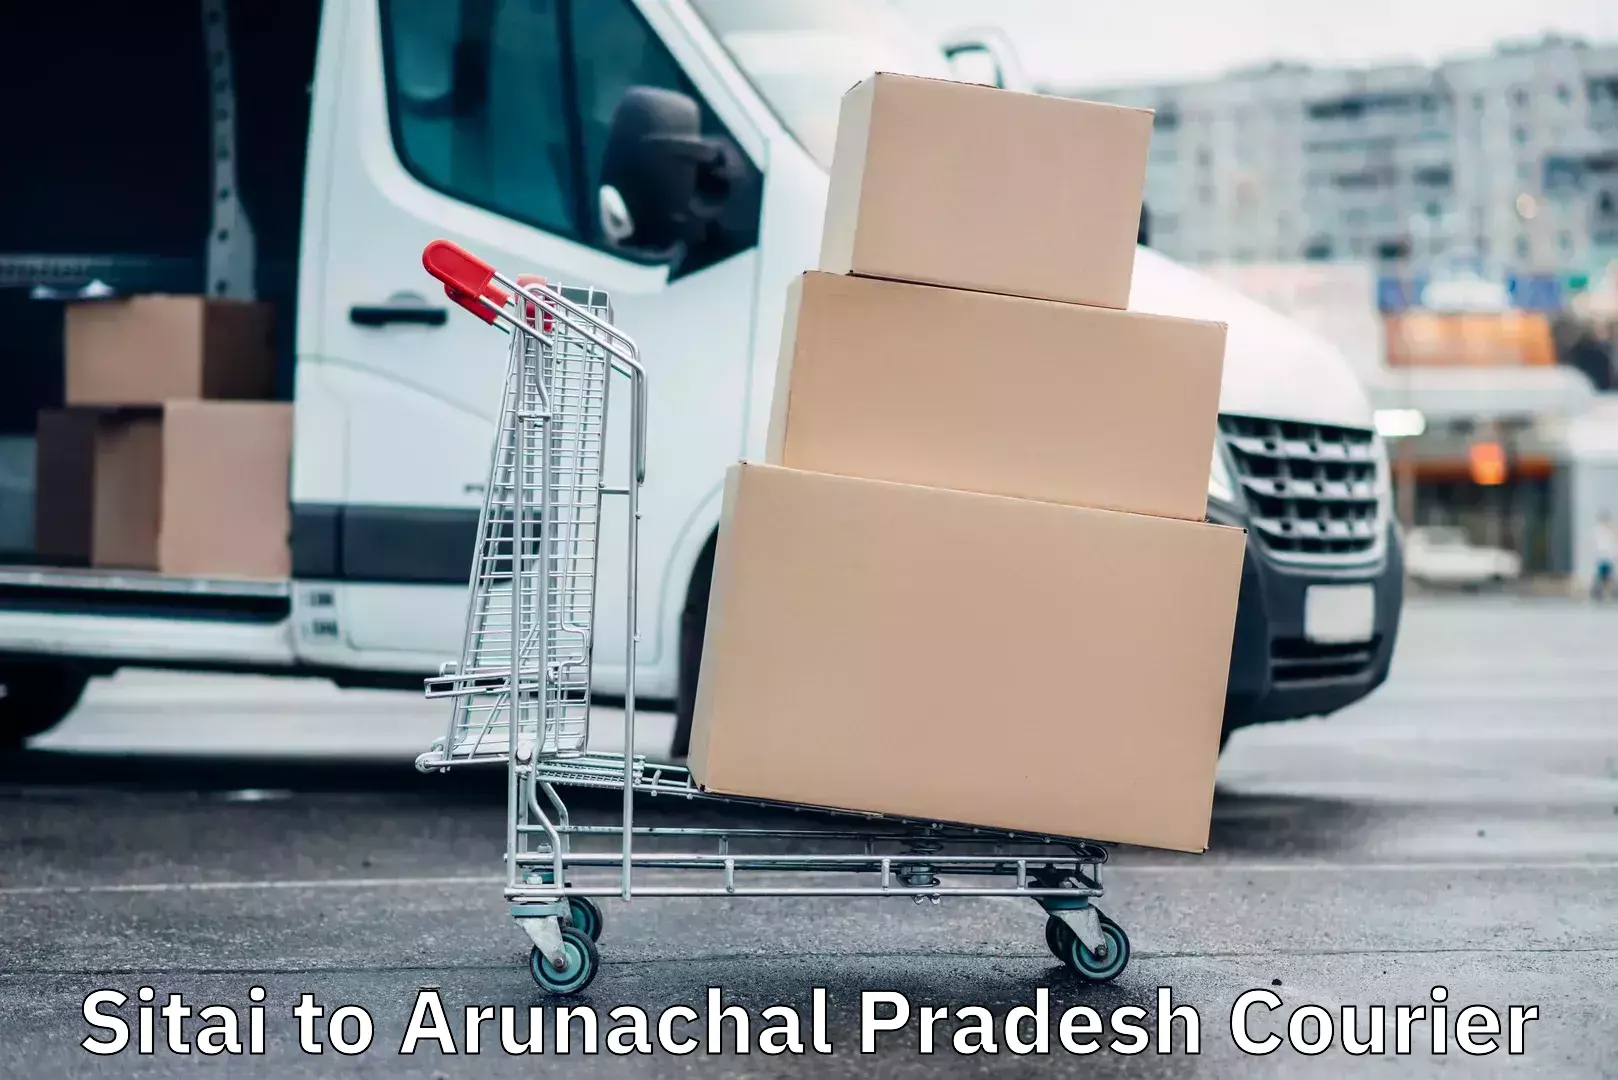 Express logistics providers Sitai to Arunachal Pradesh